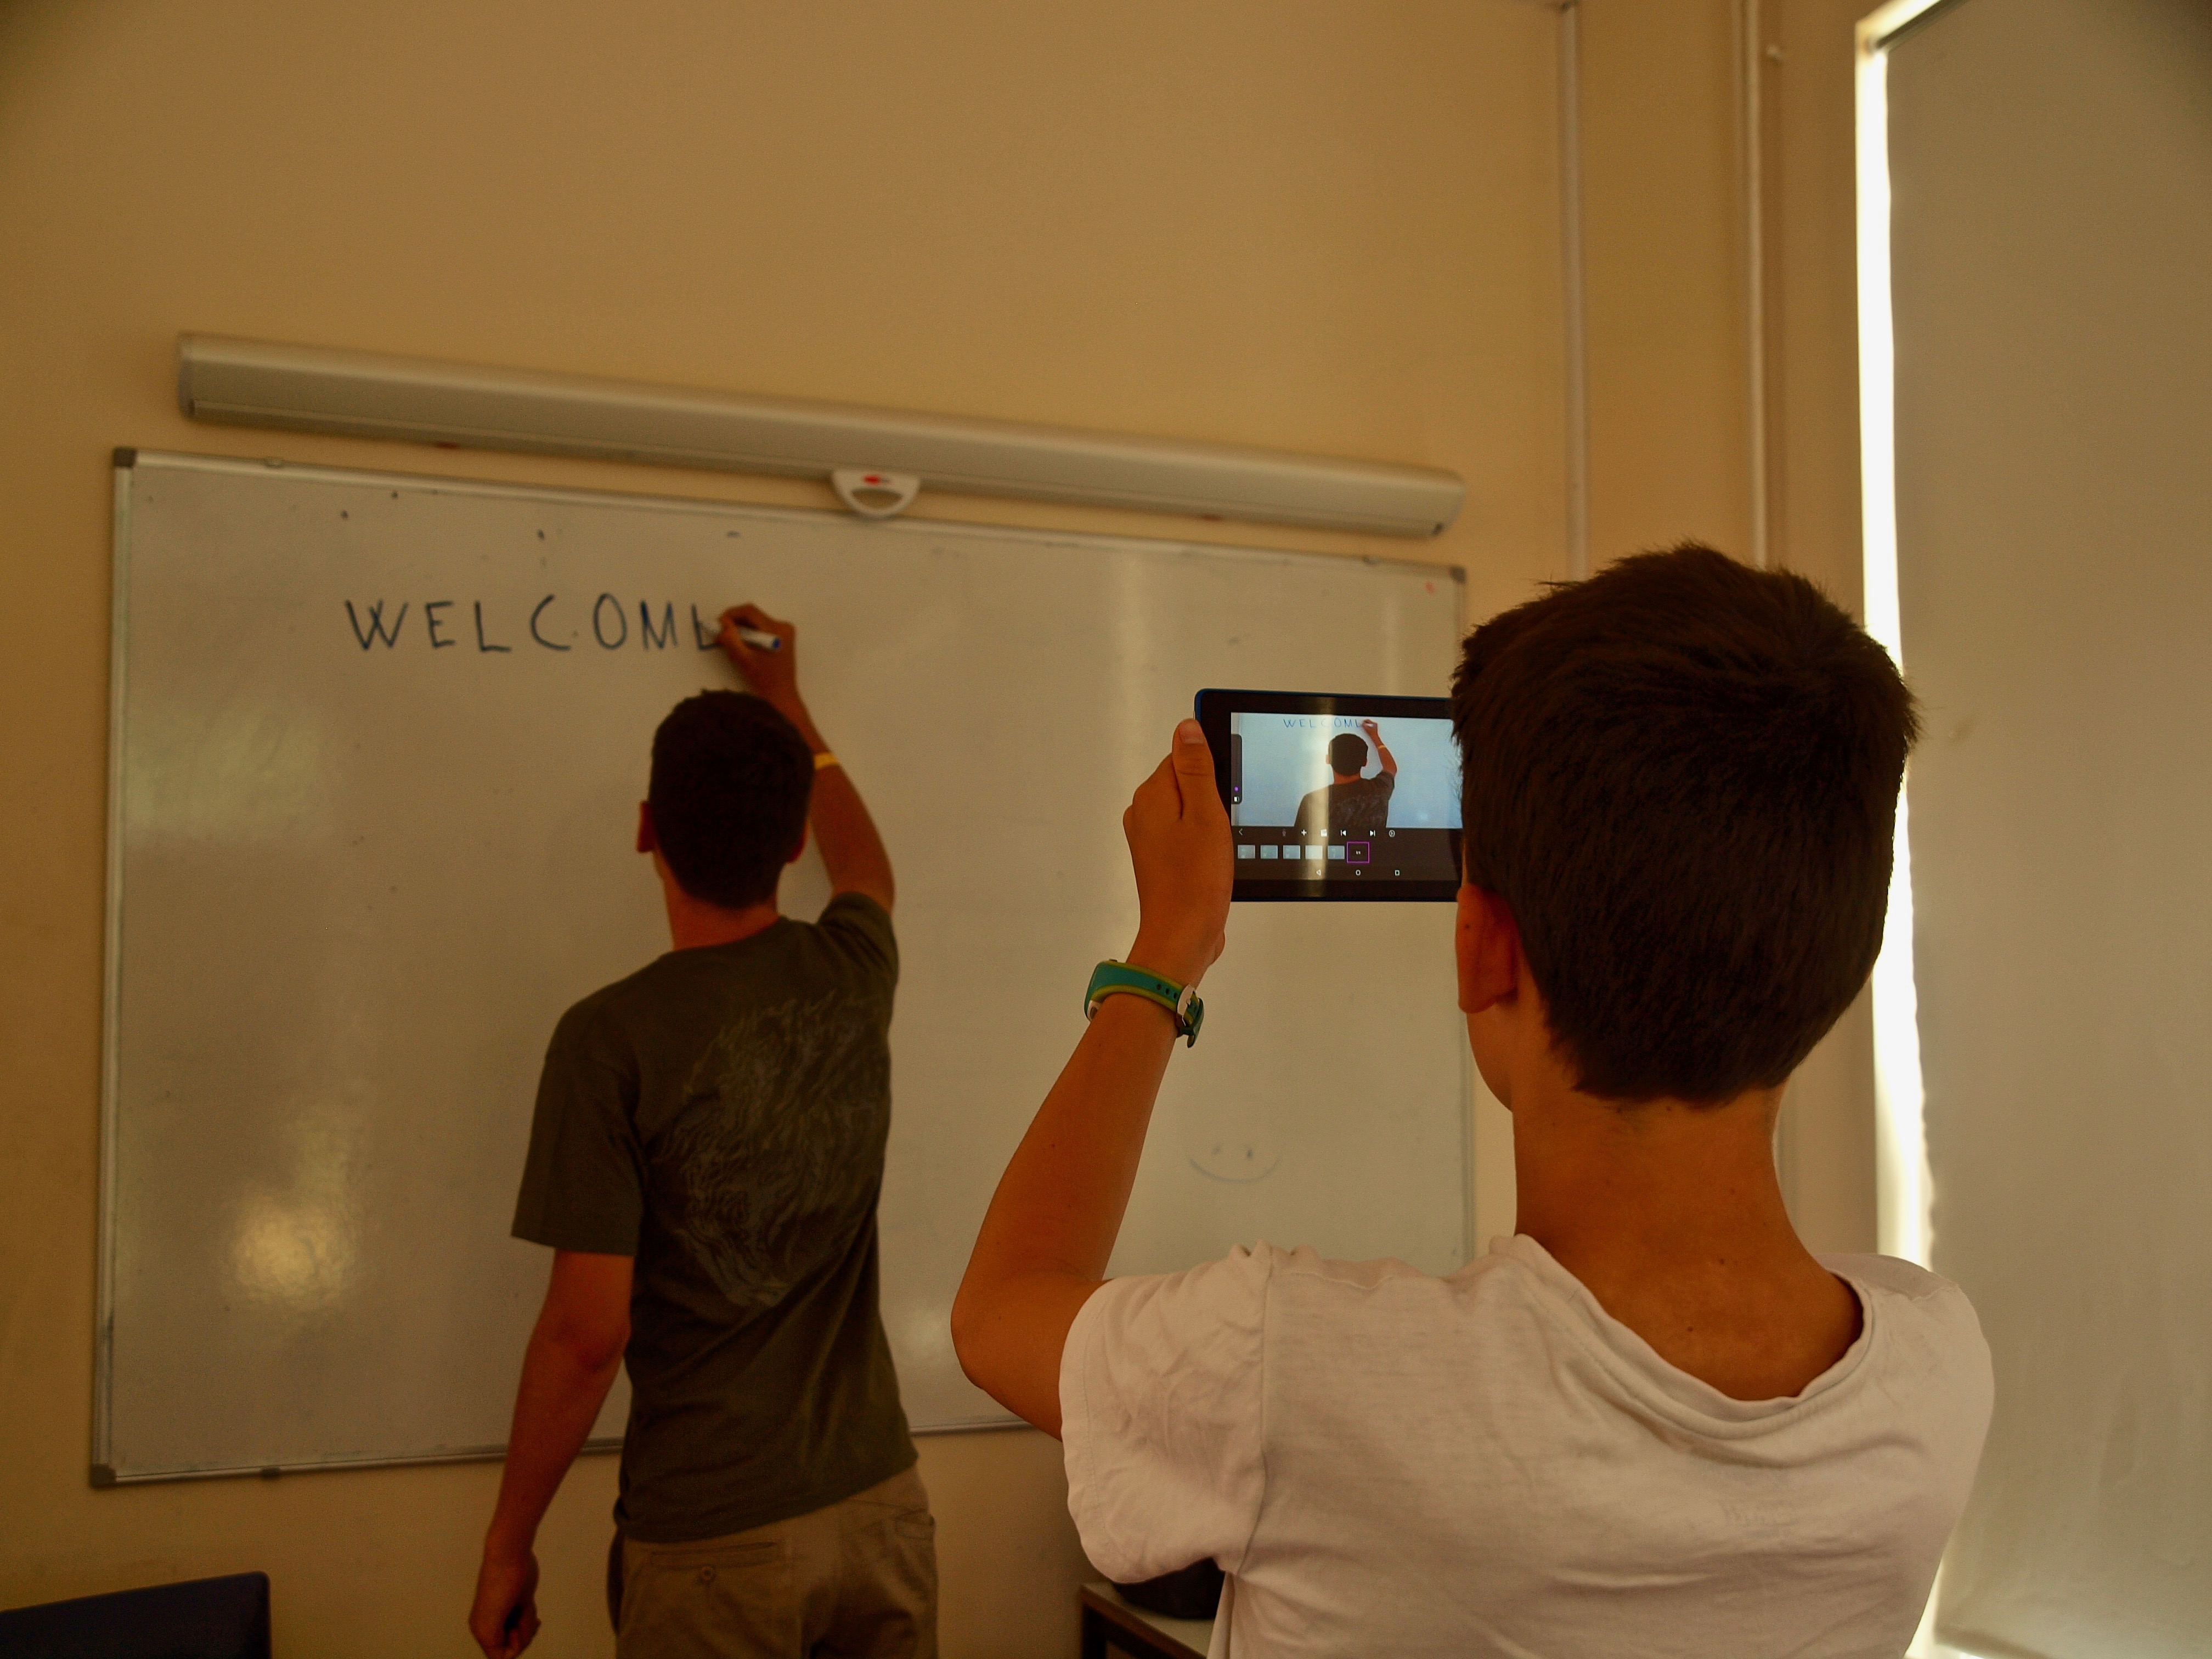 Uczeń piszący na tablicy słowo "welcome", drugi robi mu zdjęcie telefonem komórkowym